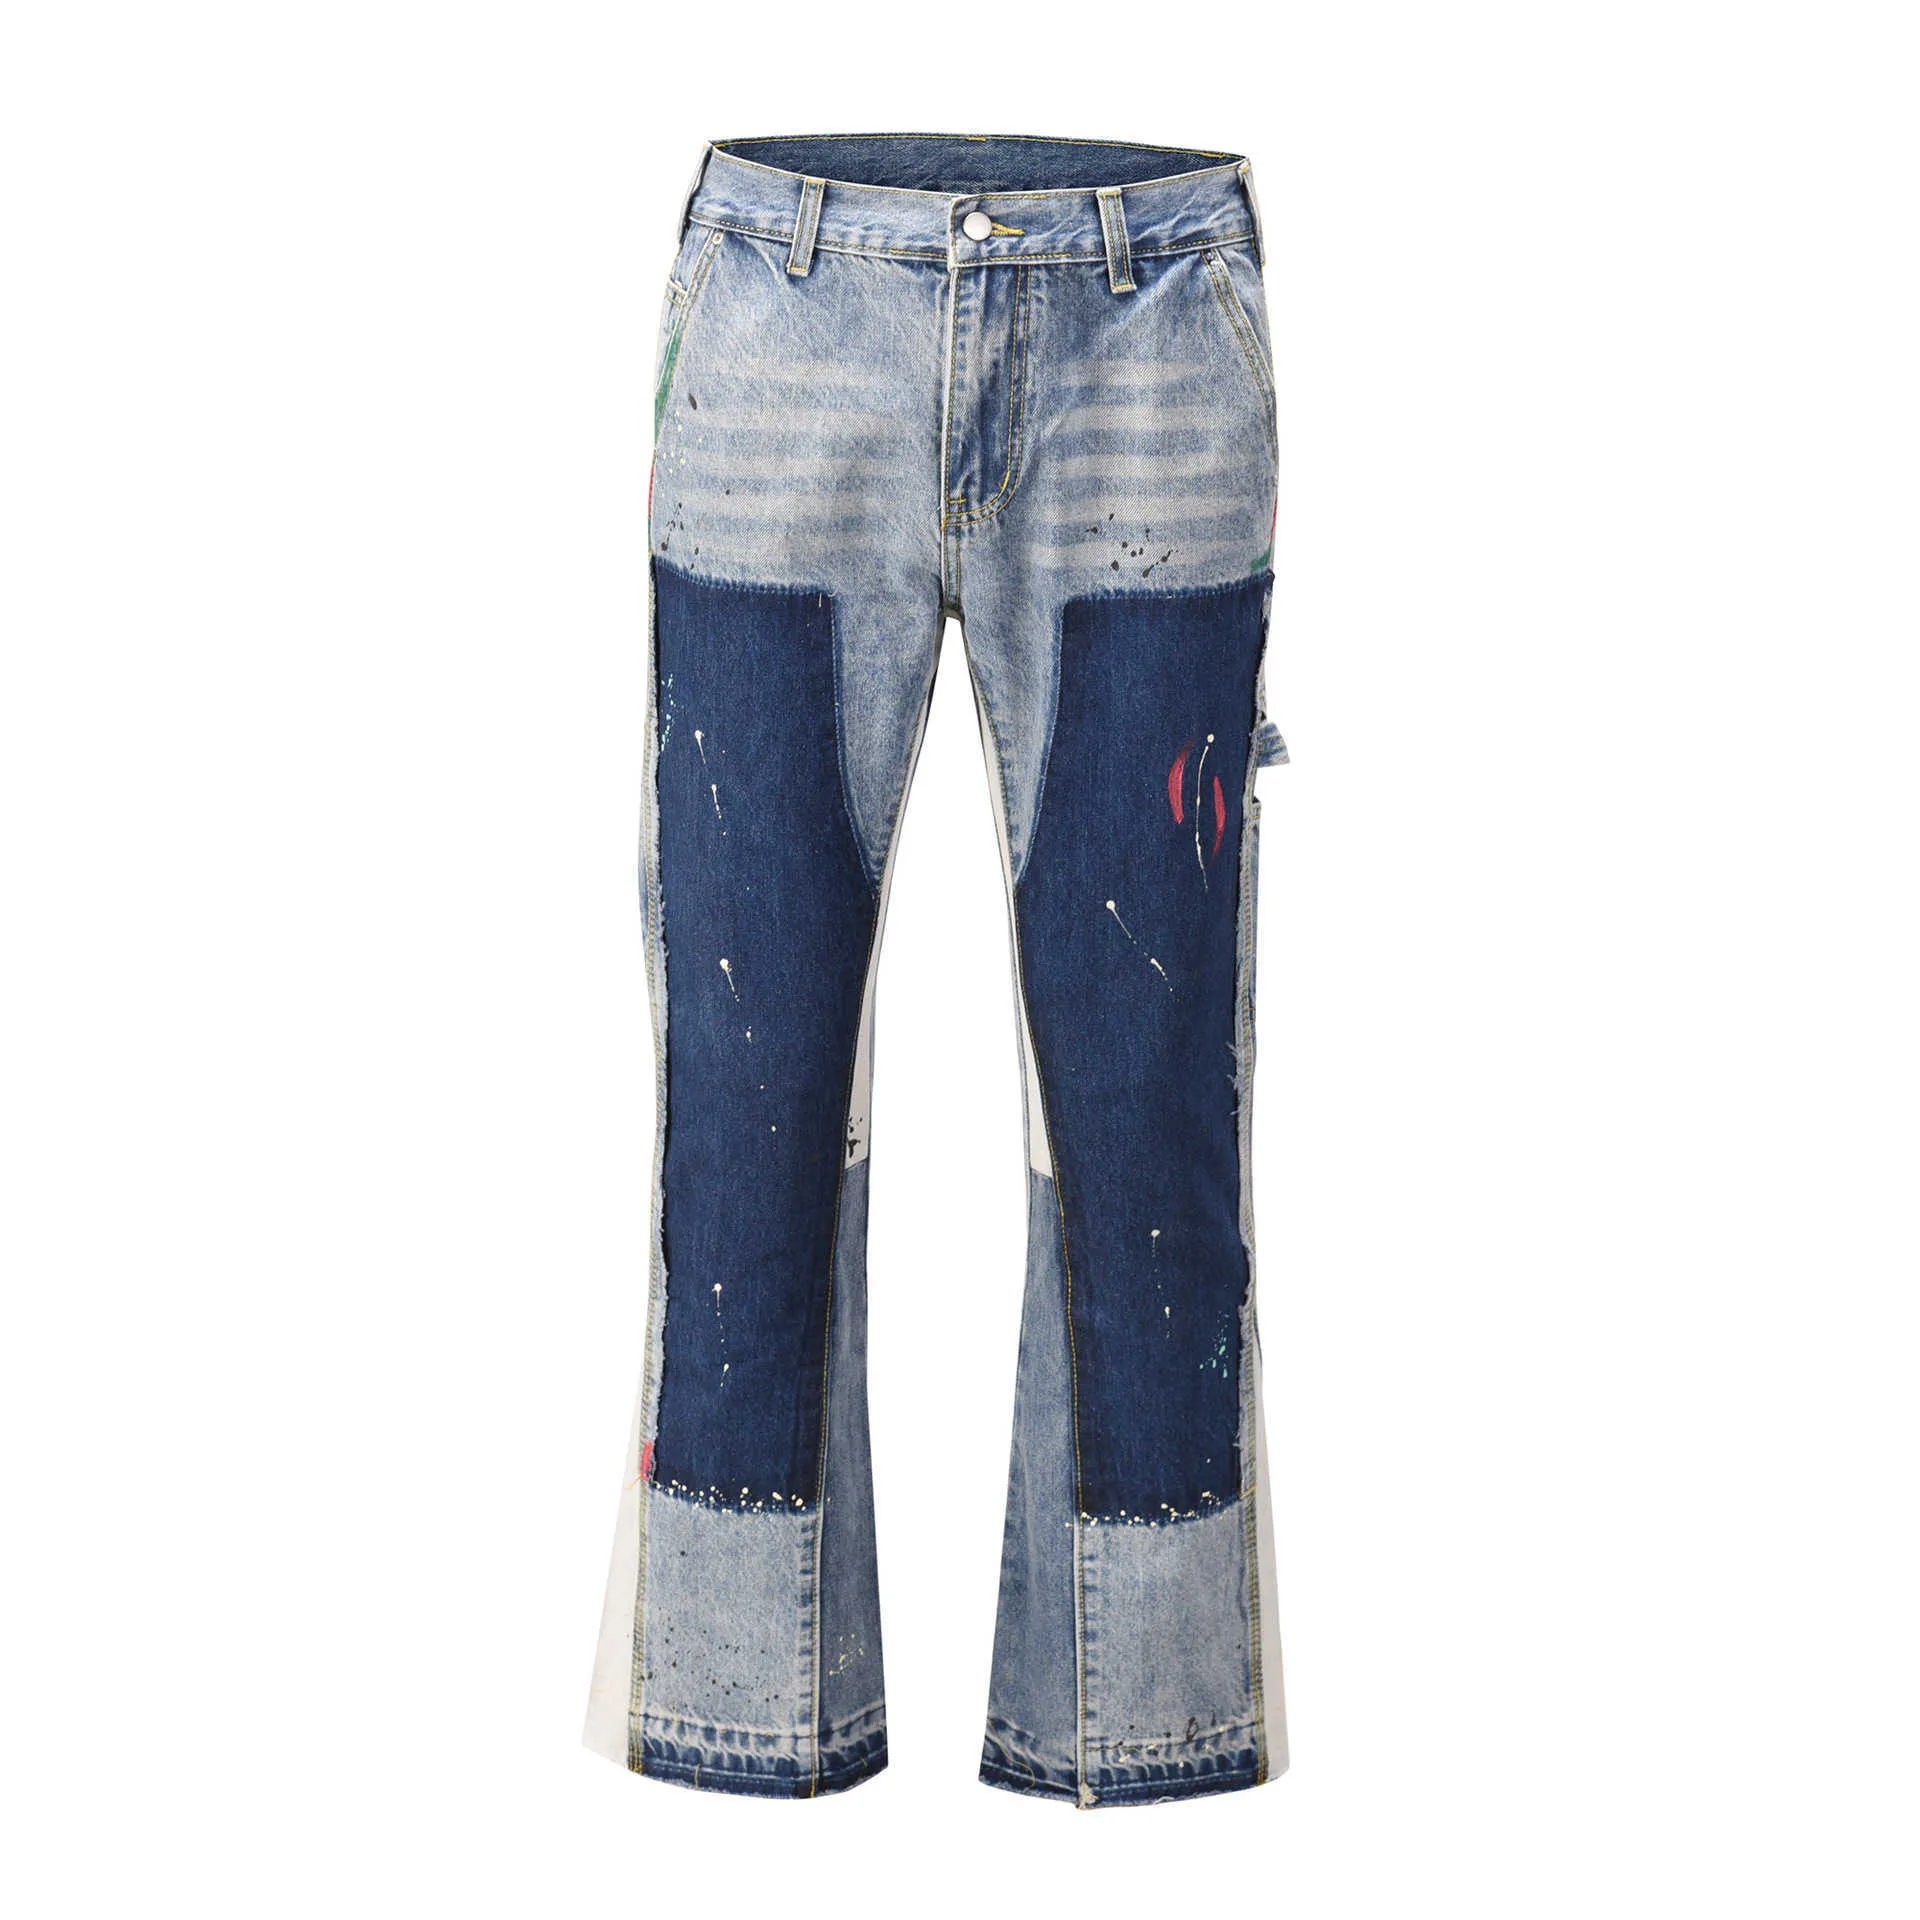 Heren jeans ins High Street Biber Heavy Industry Ink spattende Deconstruction Micro uitlopende broek Tij accumulatie vloer vegen contrast kleur